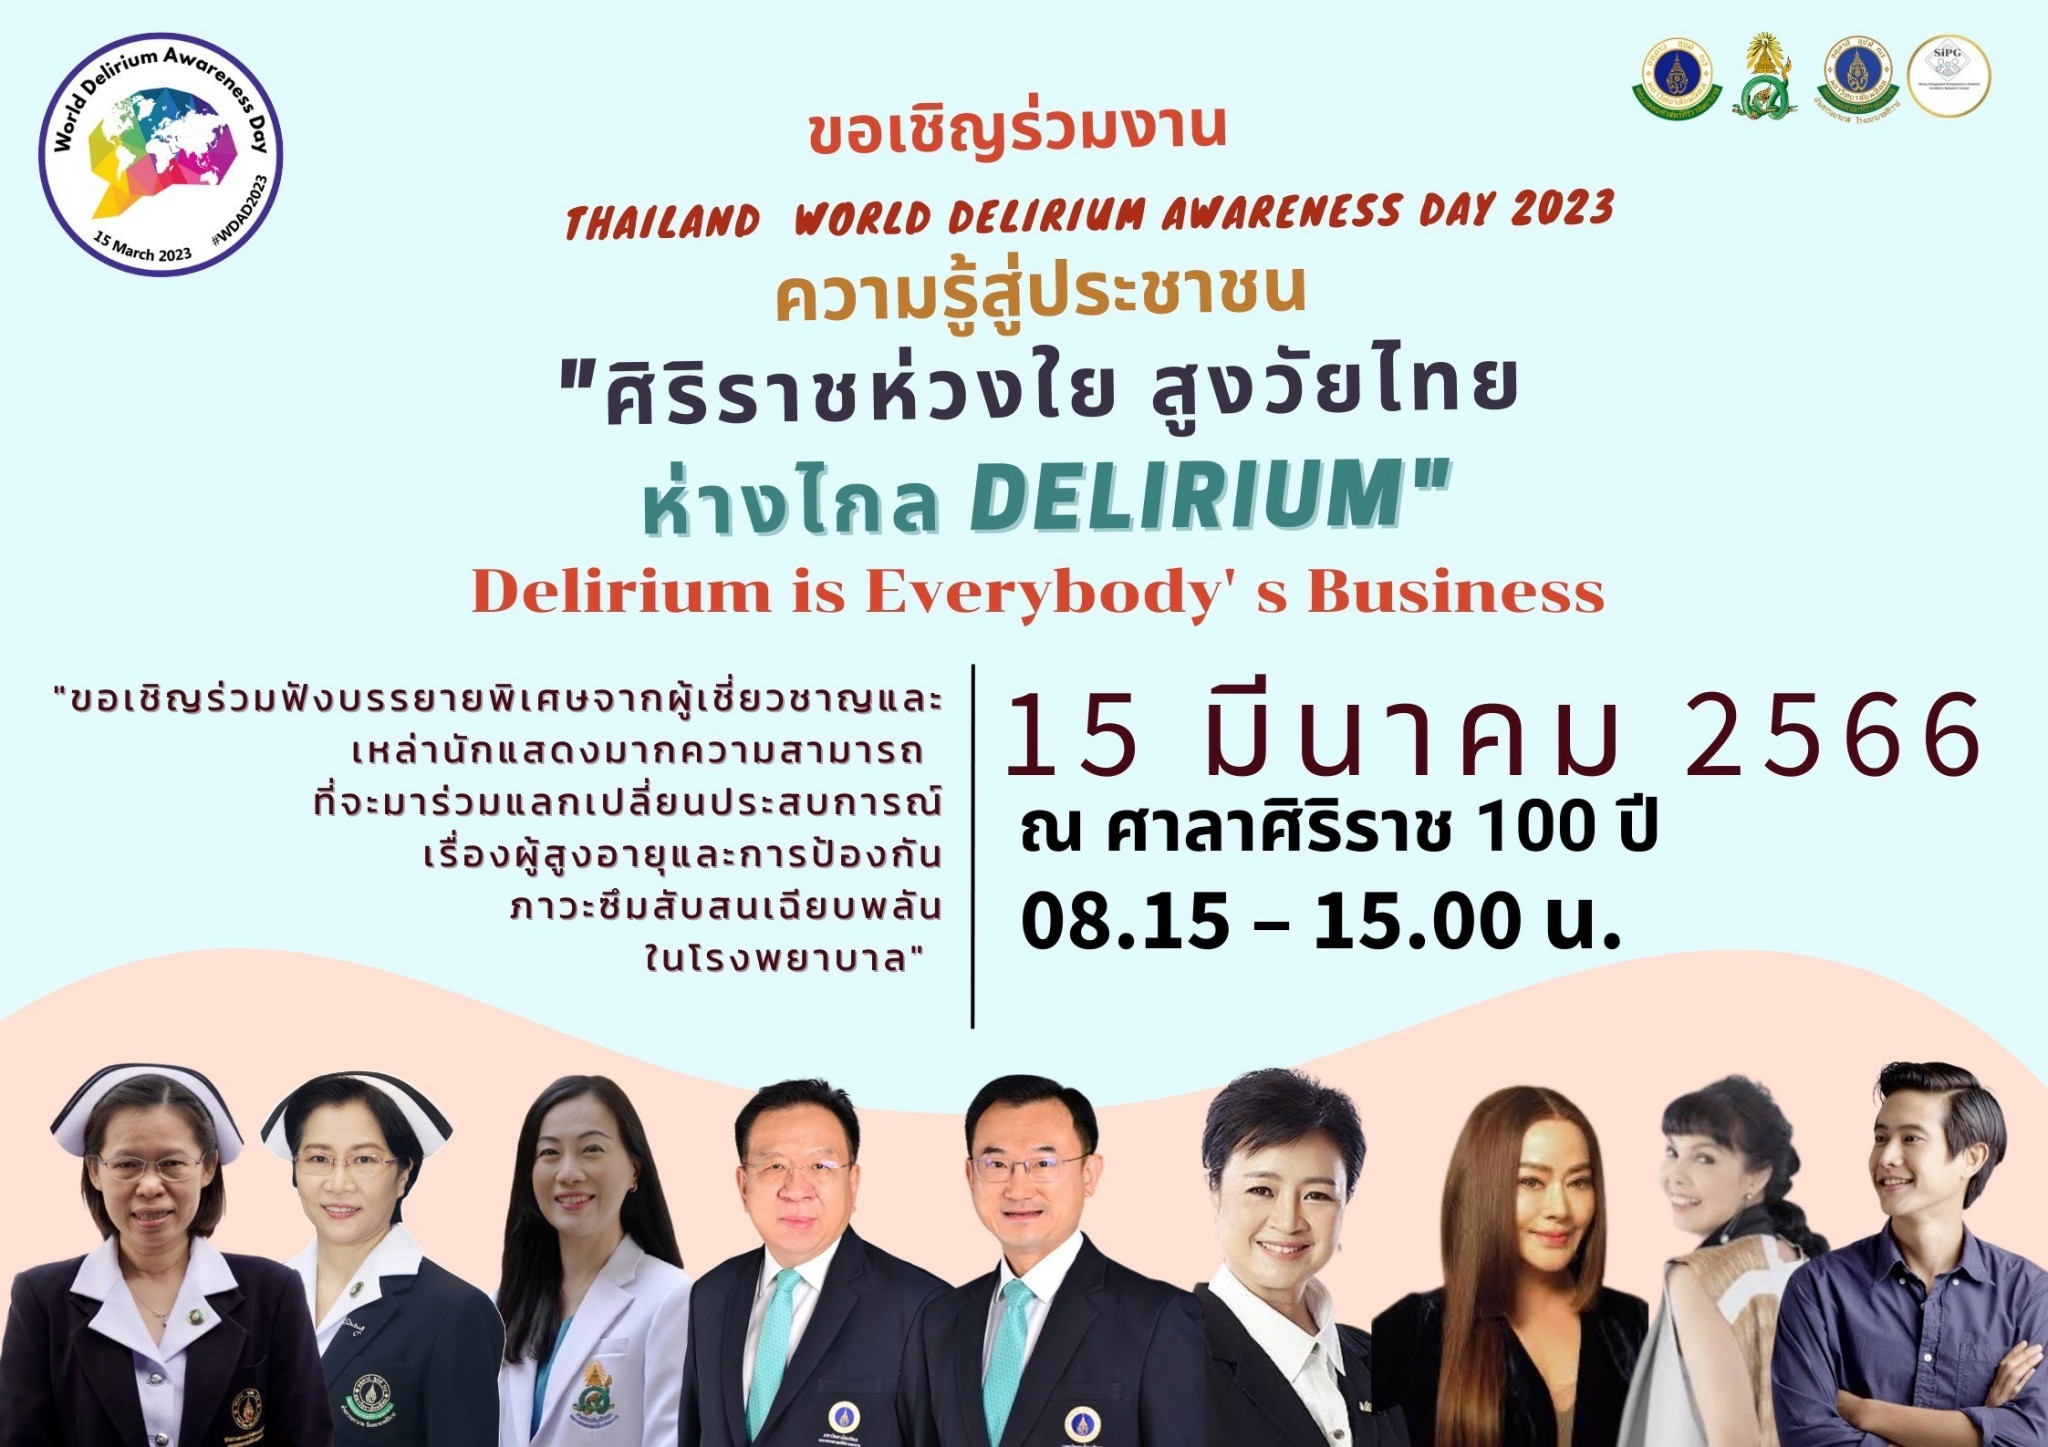 กิจกรรม Thailand World Delirium Awareness Day 2023	